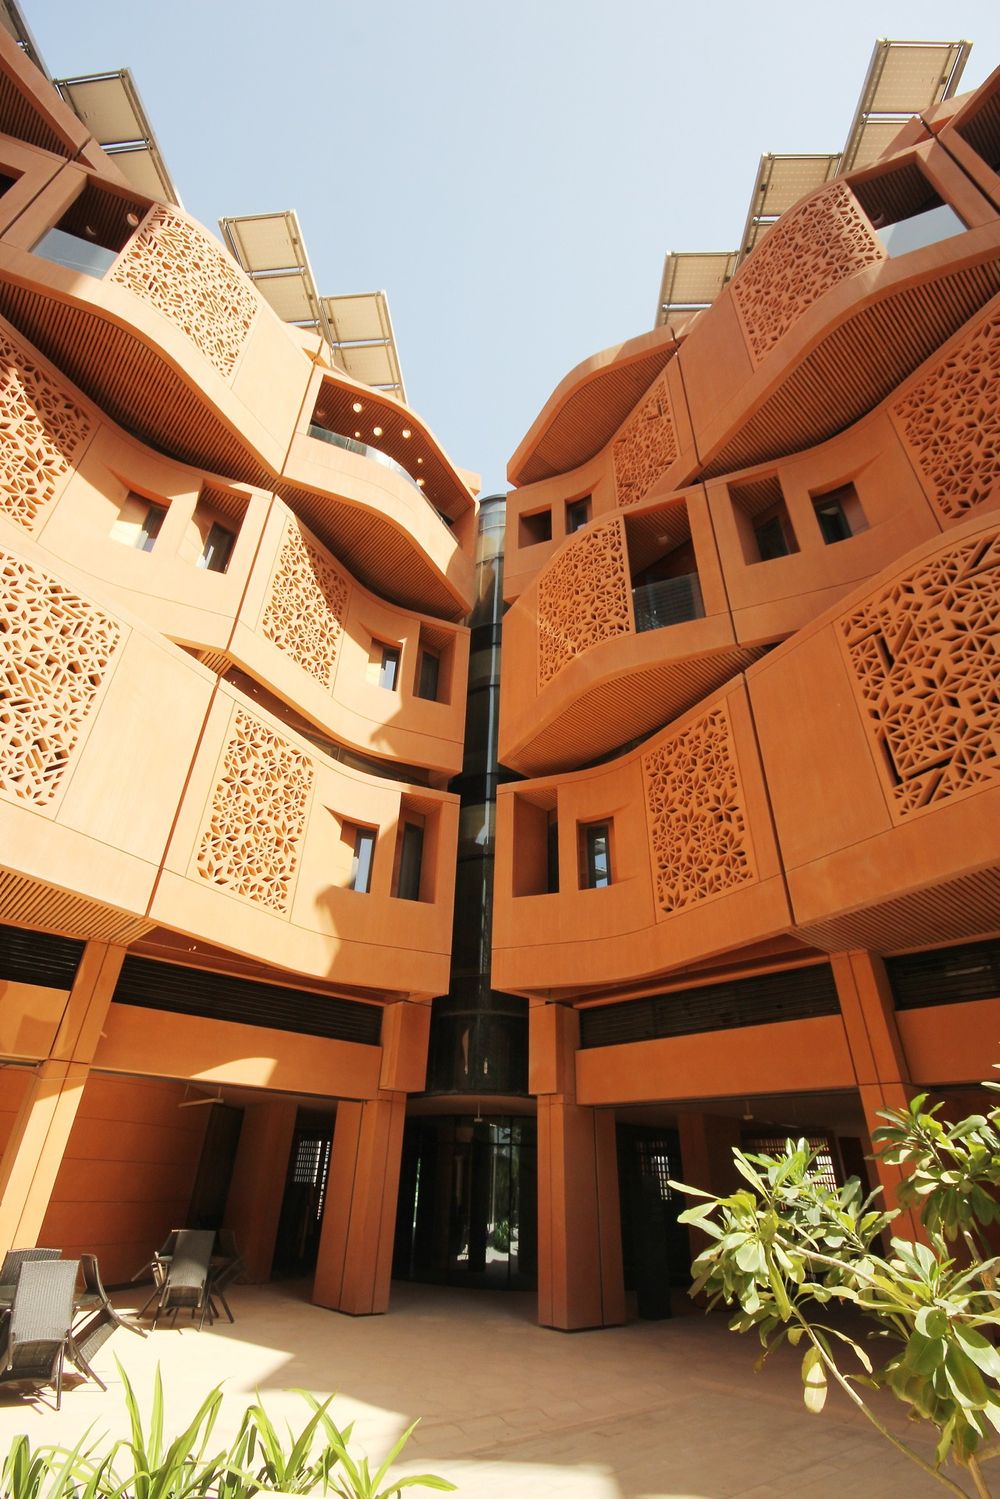 Leilighetene huser studenter fra Masdar Institute of Science and Technology. Kvinner og menn har egne bygg, og hver student har egen leilighet med soverom, kjøkken, stue, bad og balkong.